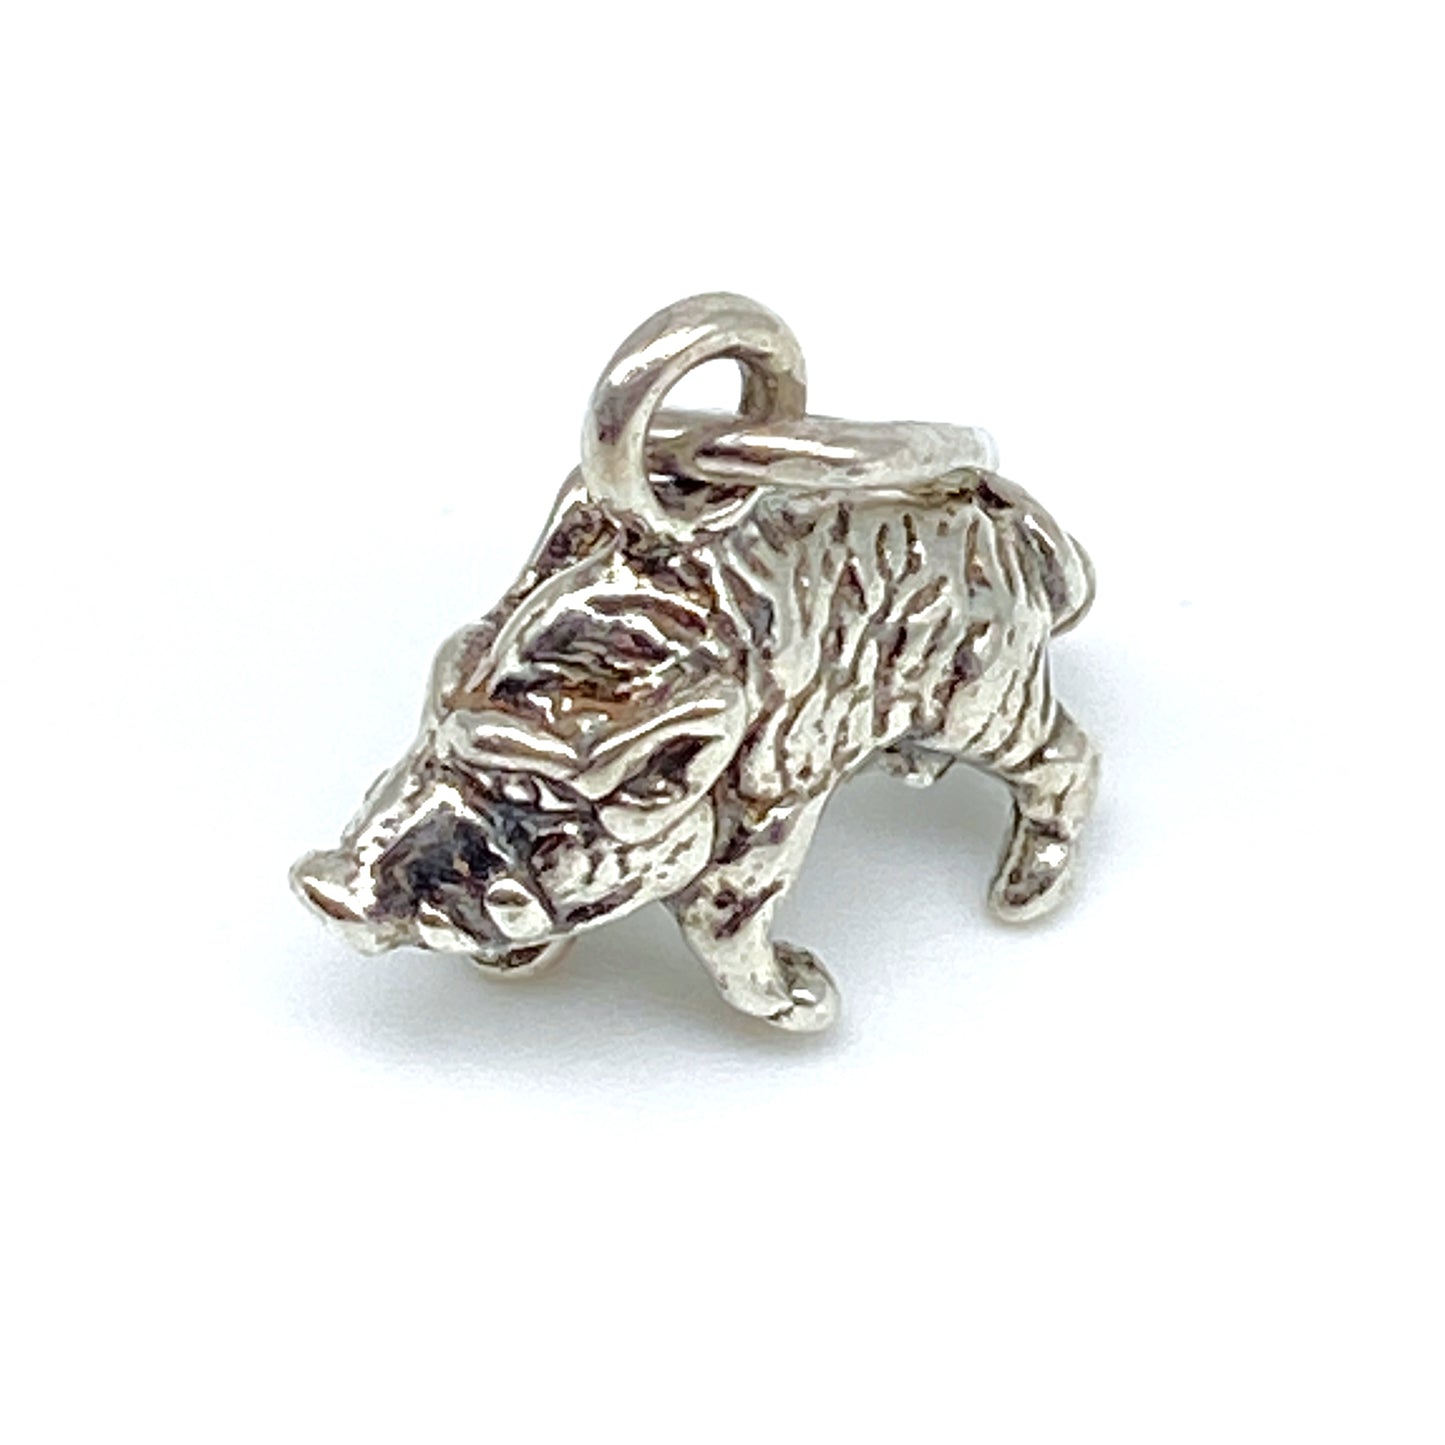 Boar - Silver Minisculpture Pendant